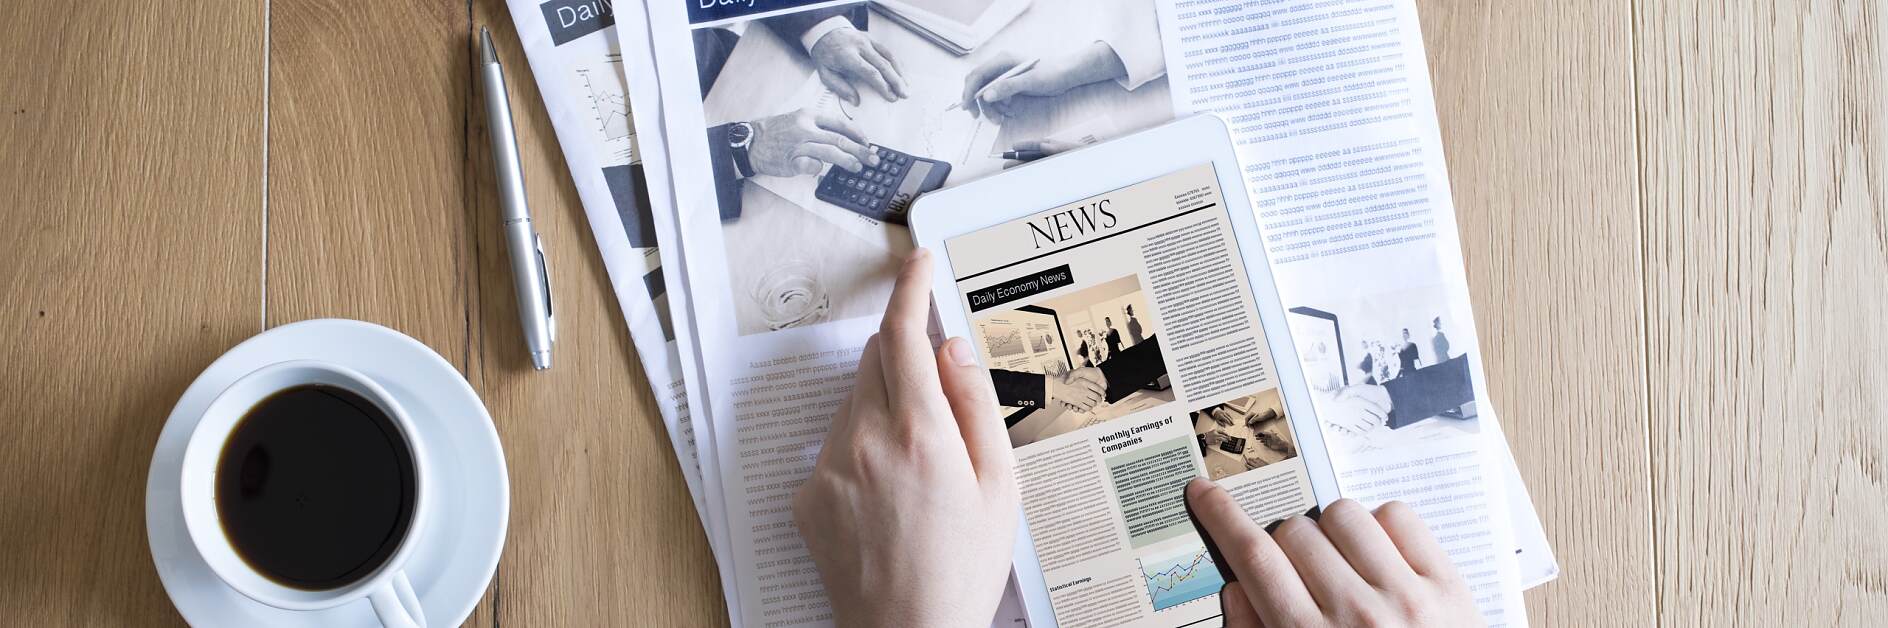 Gazeta i iPad - połączenie papieru i druku